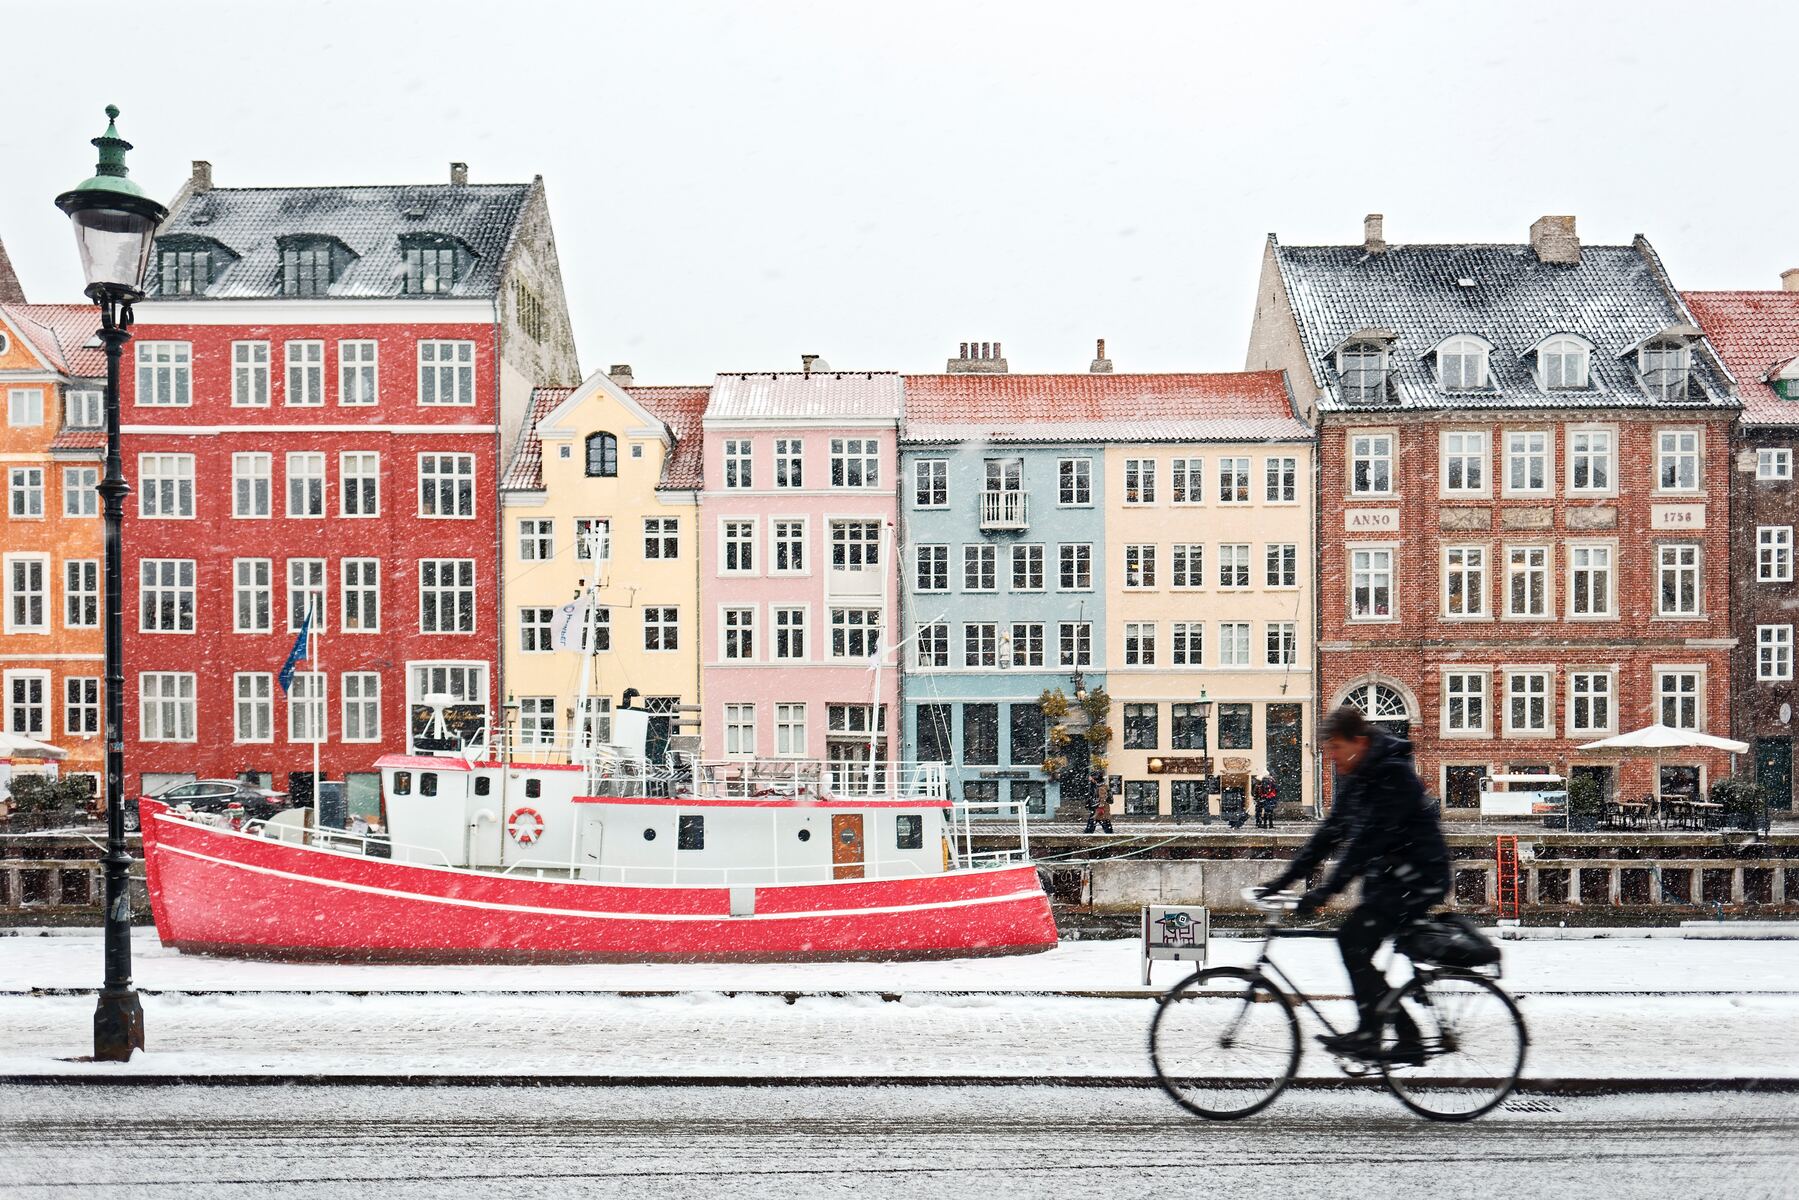 Getting an employment visa: Work permit in Denmark